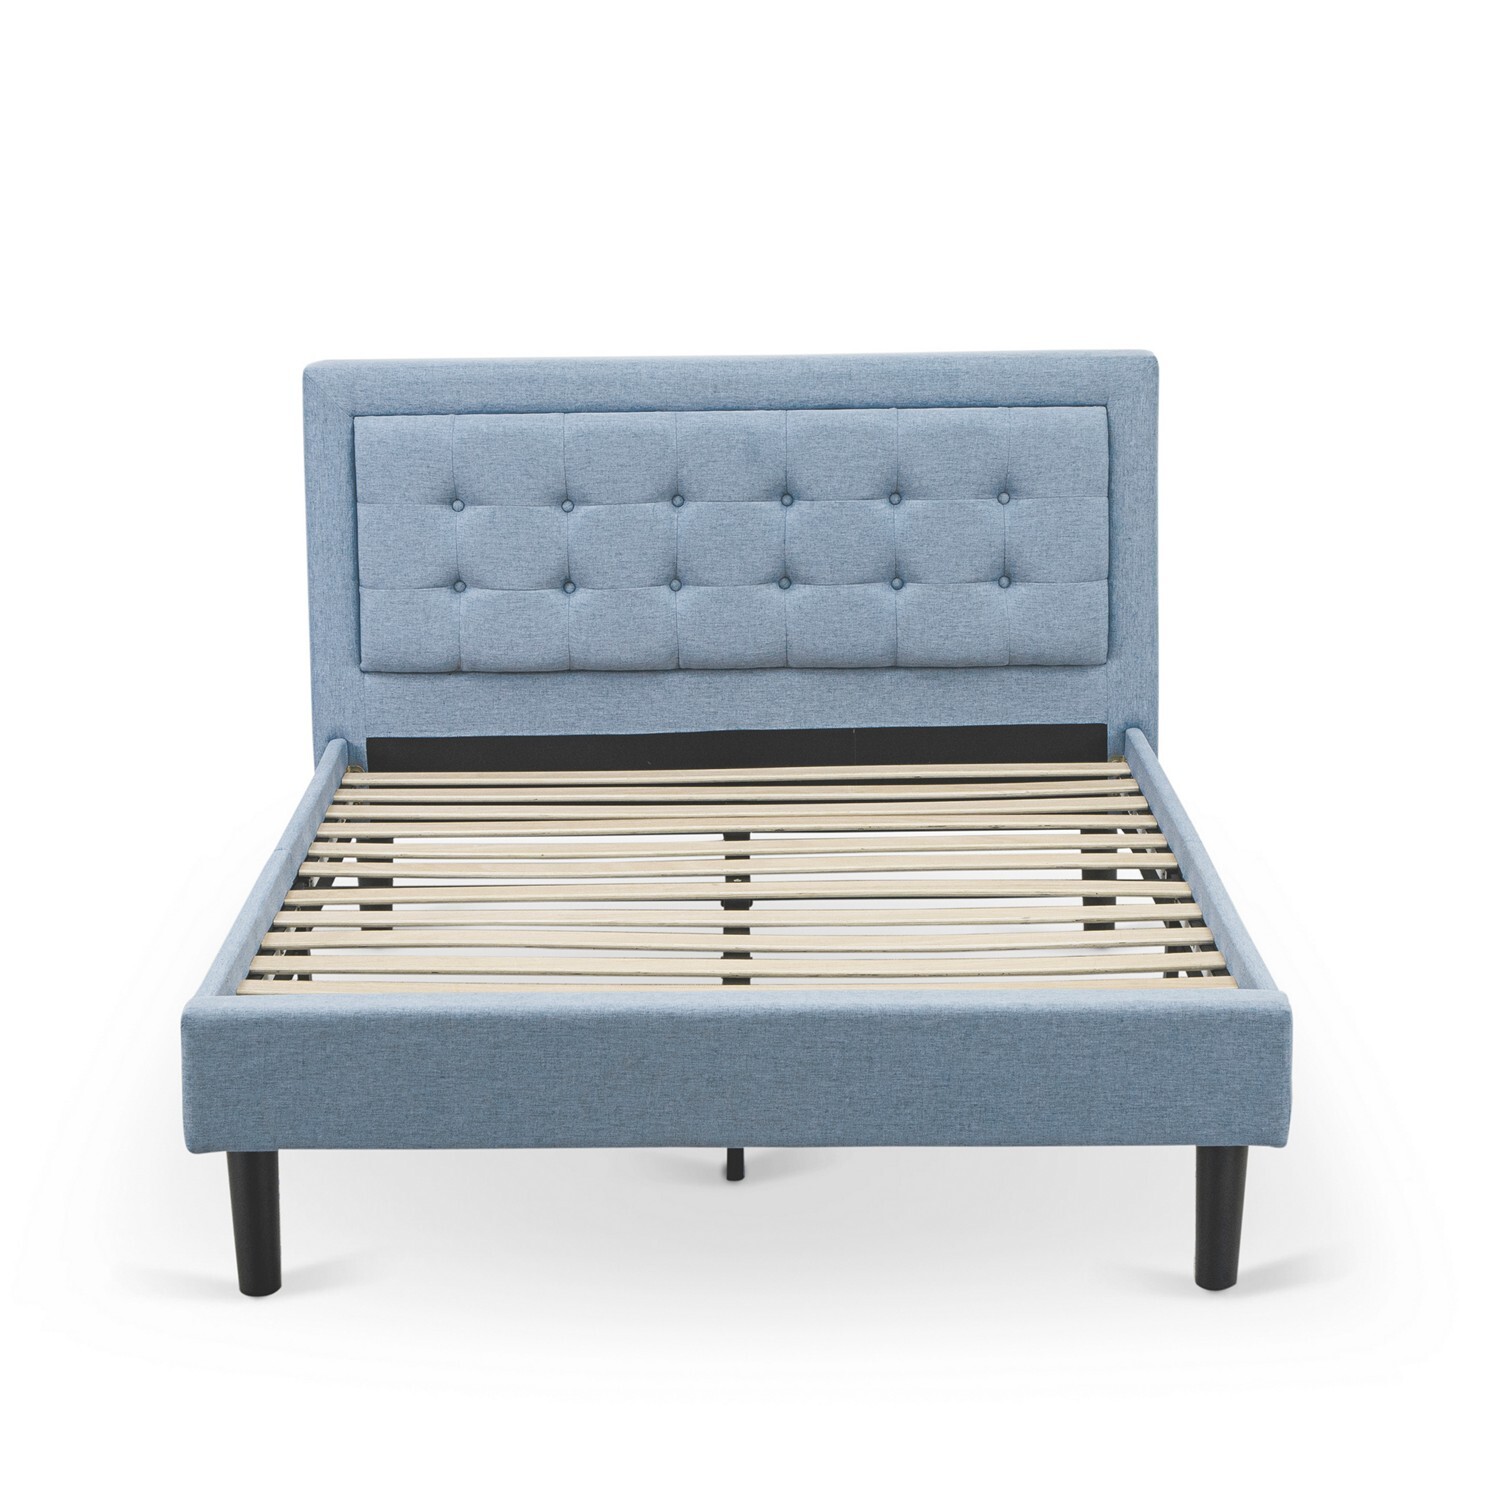 East West Furniture 2-piece Wood Platform Full Bedroom Set in Denim Blue/Navy - image 3 of 5